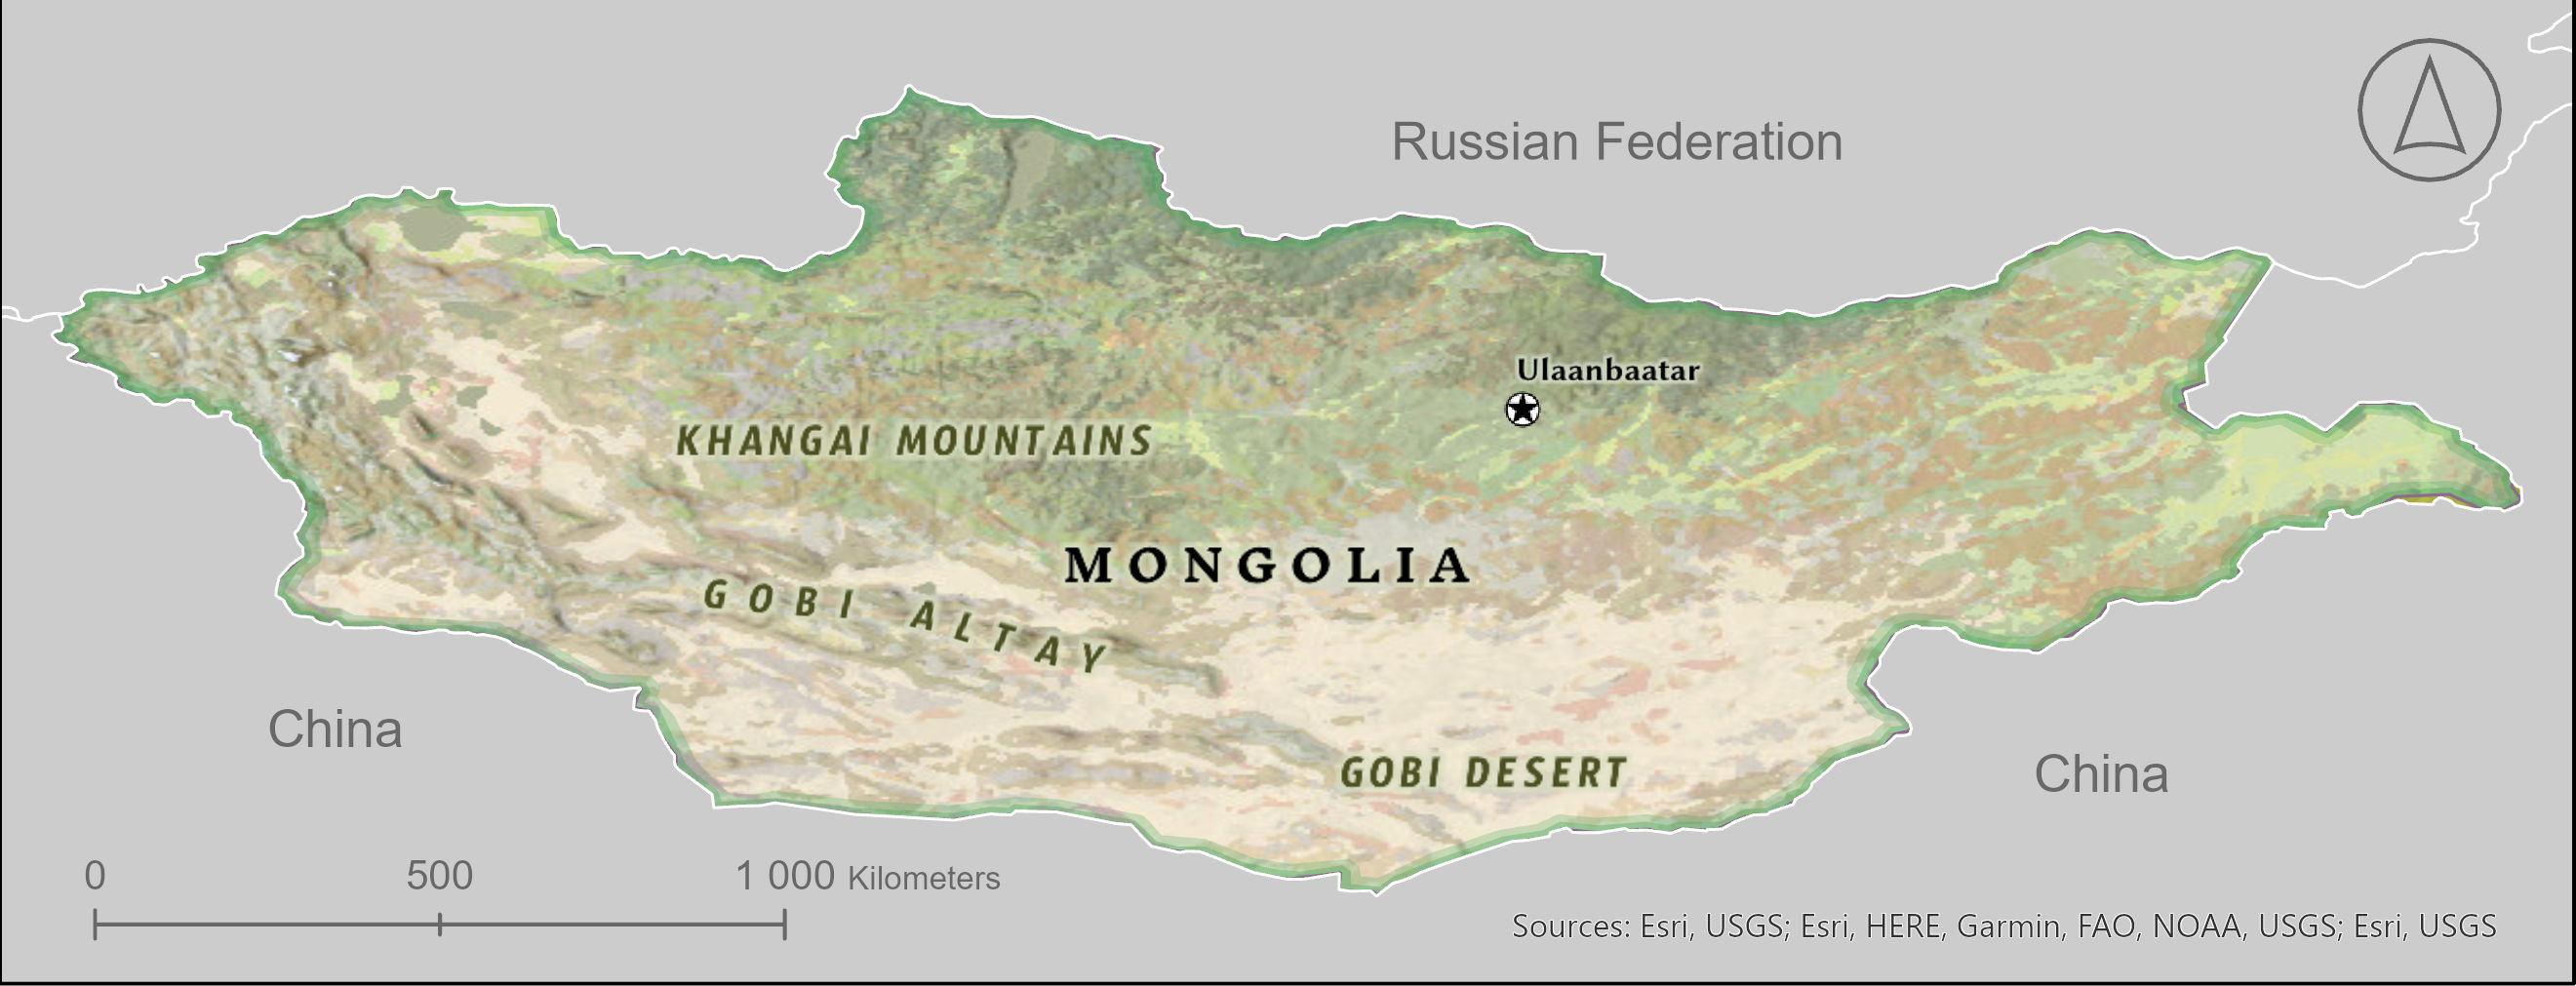 mongolian plateau map location